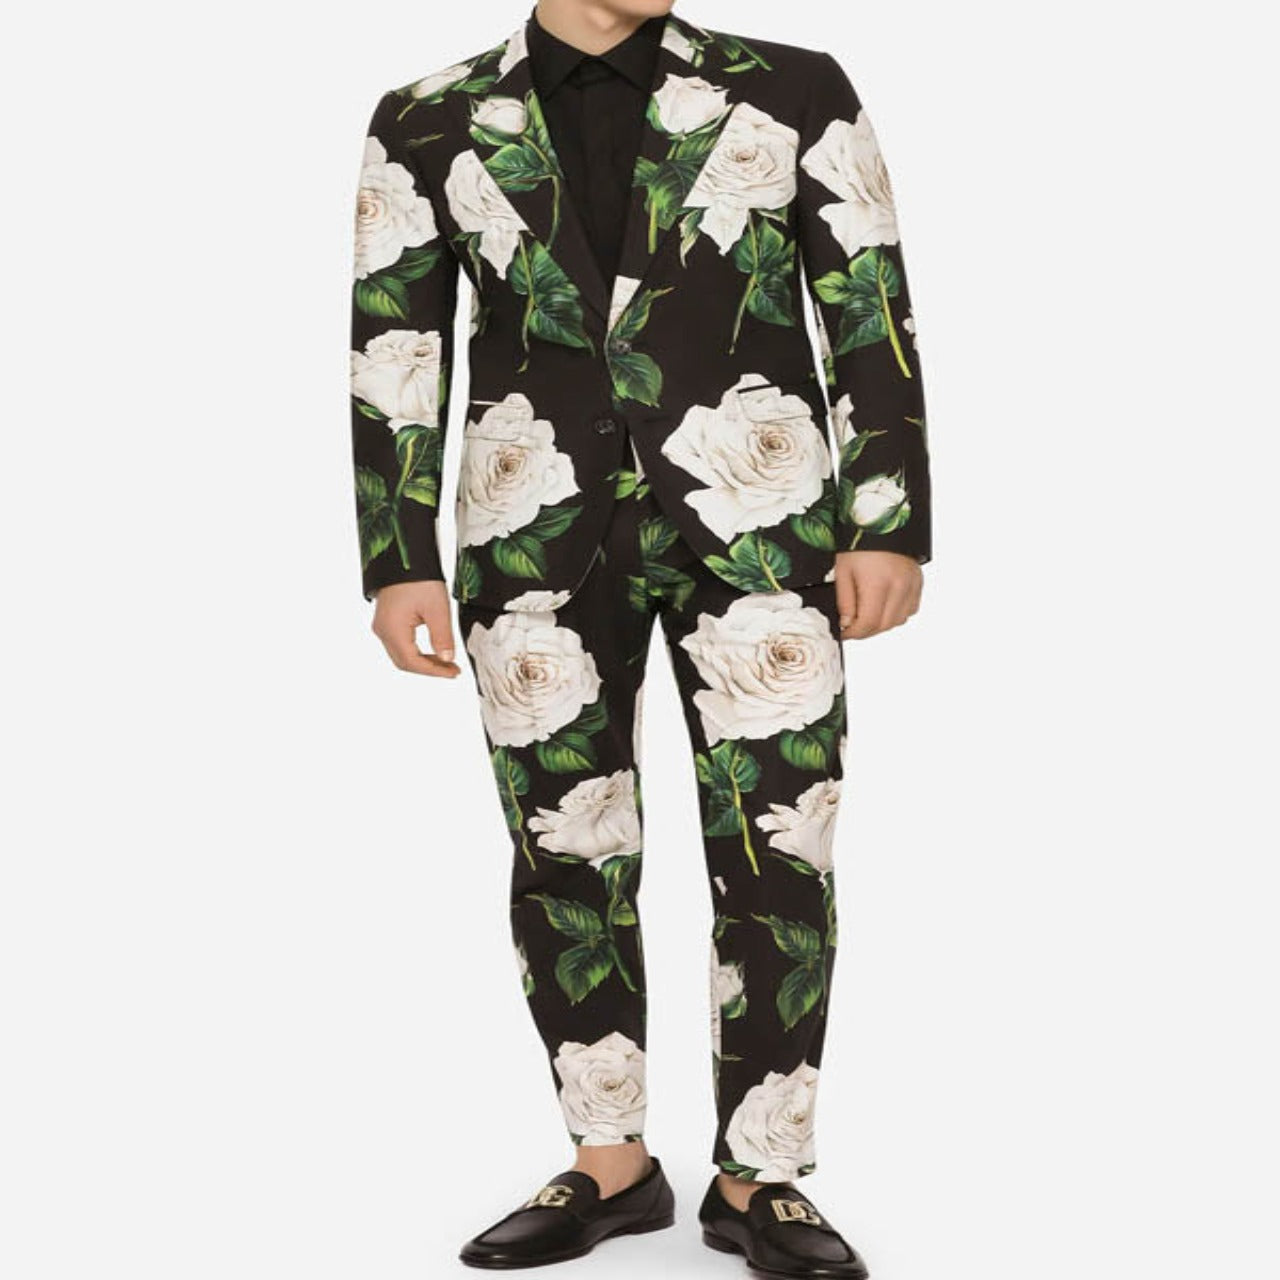 Joe Burrow Floral Suit